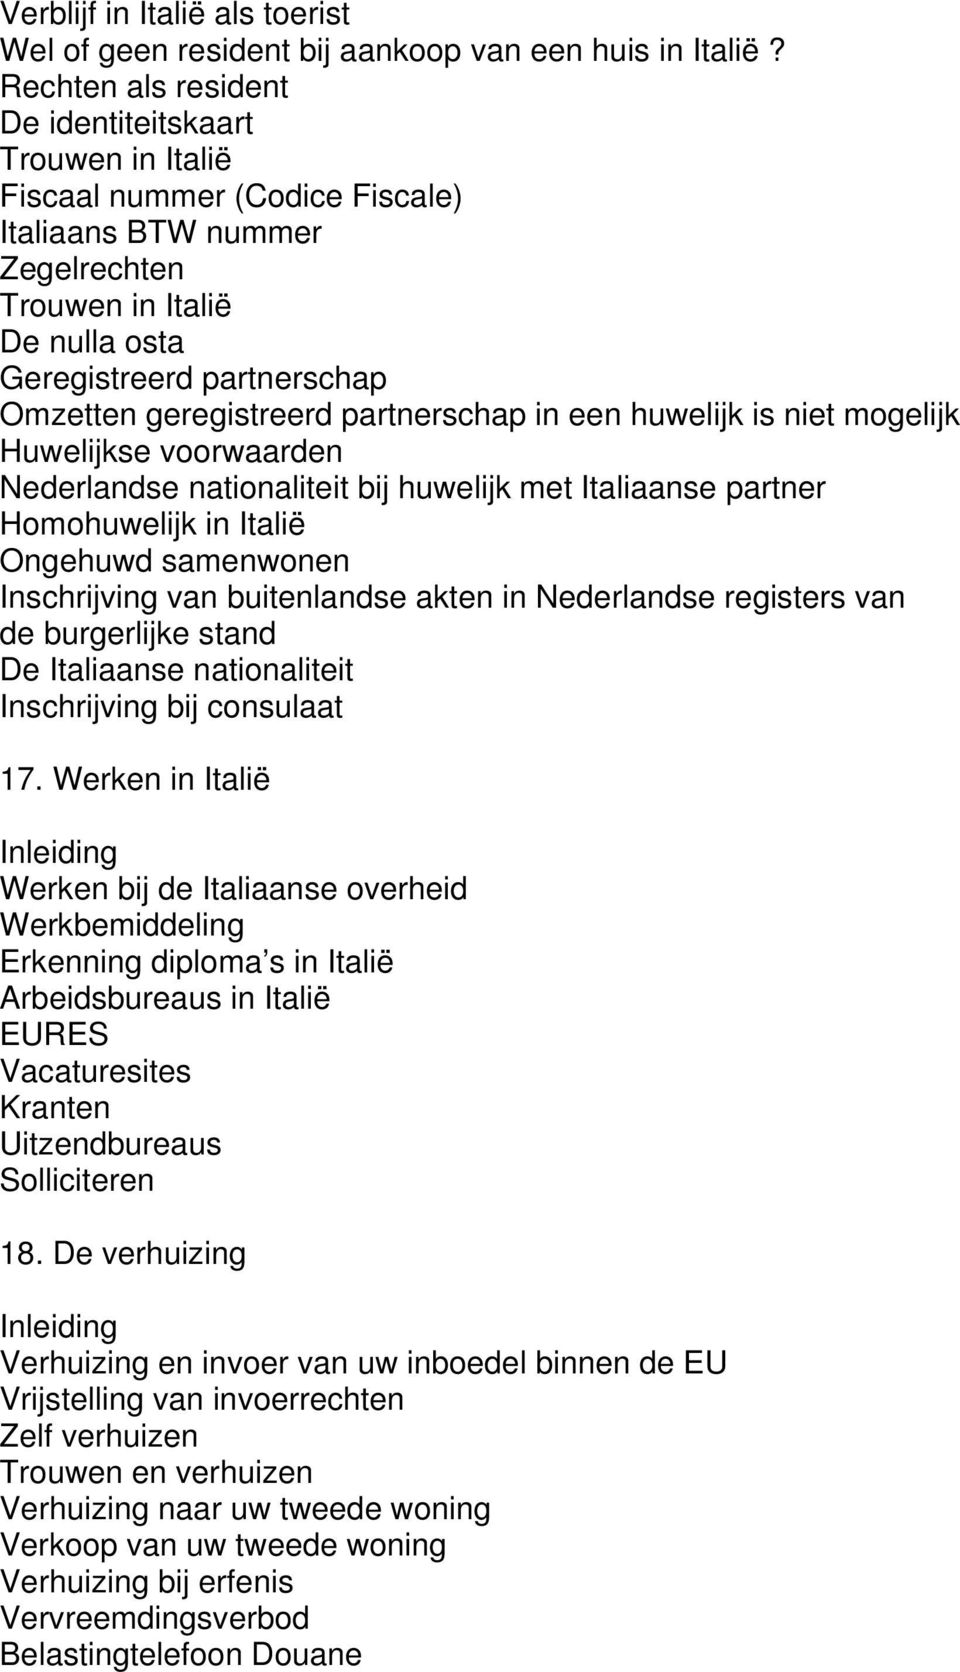 geregistreerd partnerschap in een huwelijk is niet mogelijk Huwelijkse voorwaarden Nederlandse nationaliteit bij huwelijk met Italiaanse partner Homohuwelijk in Italië Ongehuwd samenwonen